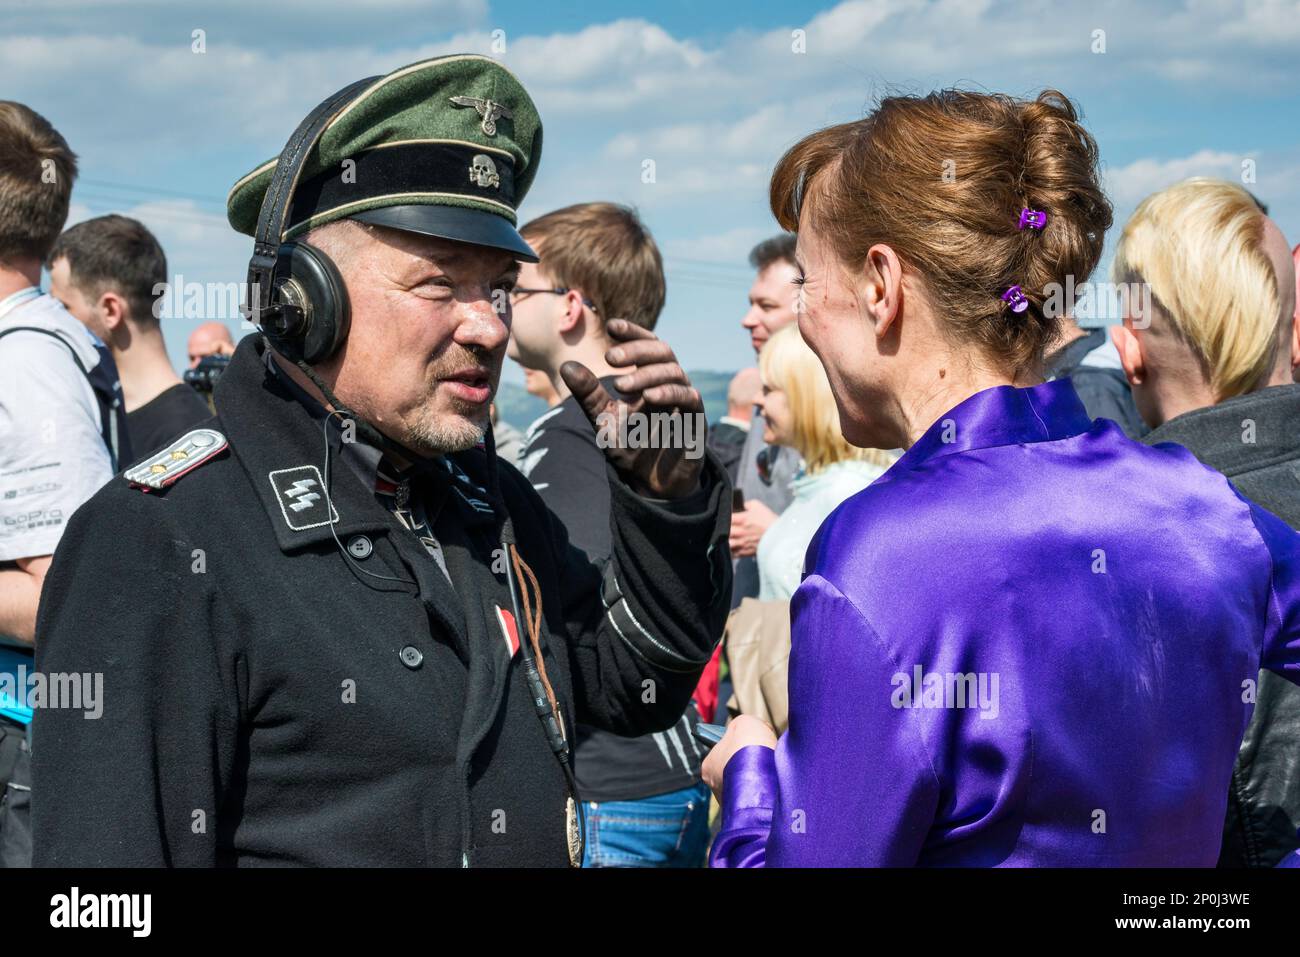 Reenactor en Waffen-SS uniforme allemand, pilote de char, femme spectateur, parlant après reconstitution de la bataille de WW2, Jelenia Gora, Basse Silésie, Pologne Banque D'Images